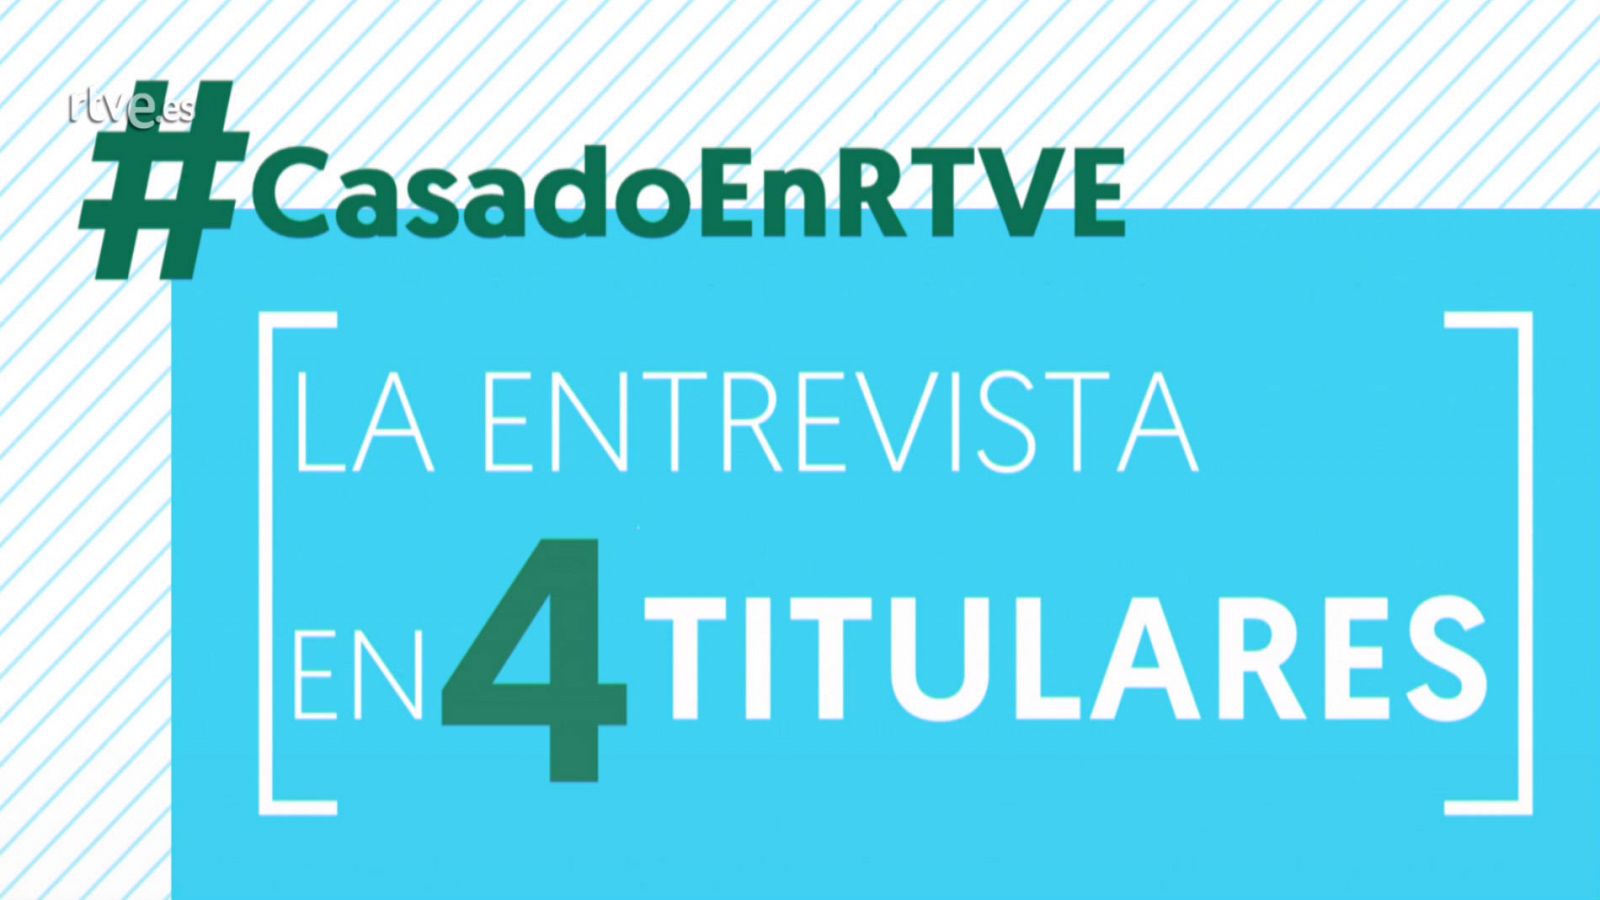 Cuatro titulares de la entrevista a Pablo Casado en RTVE